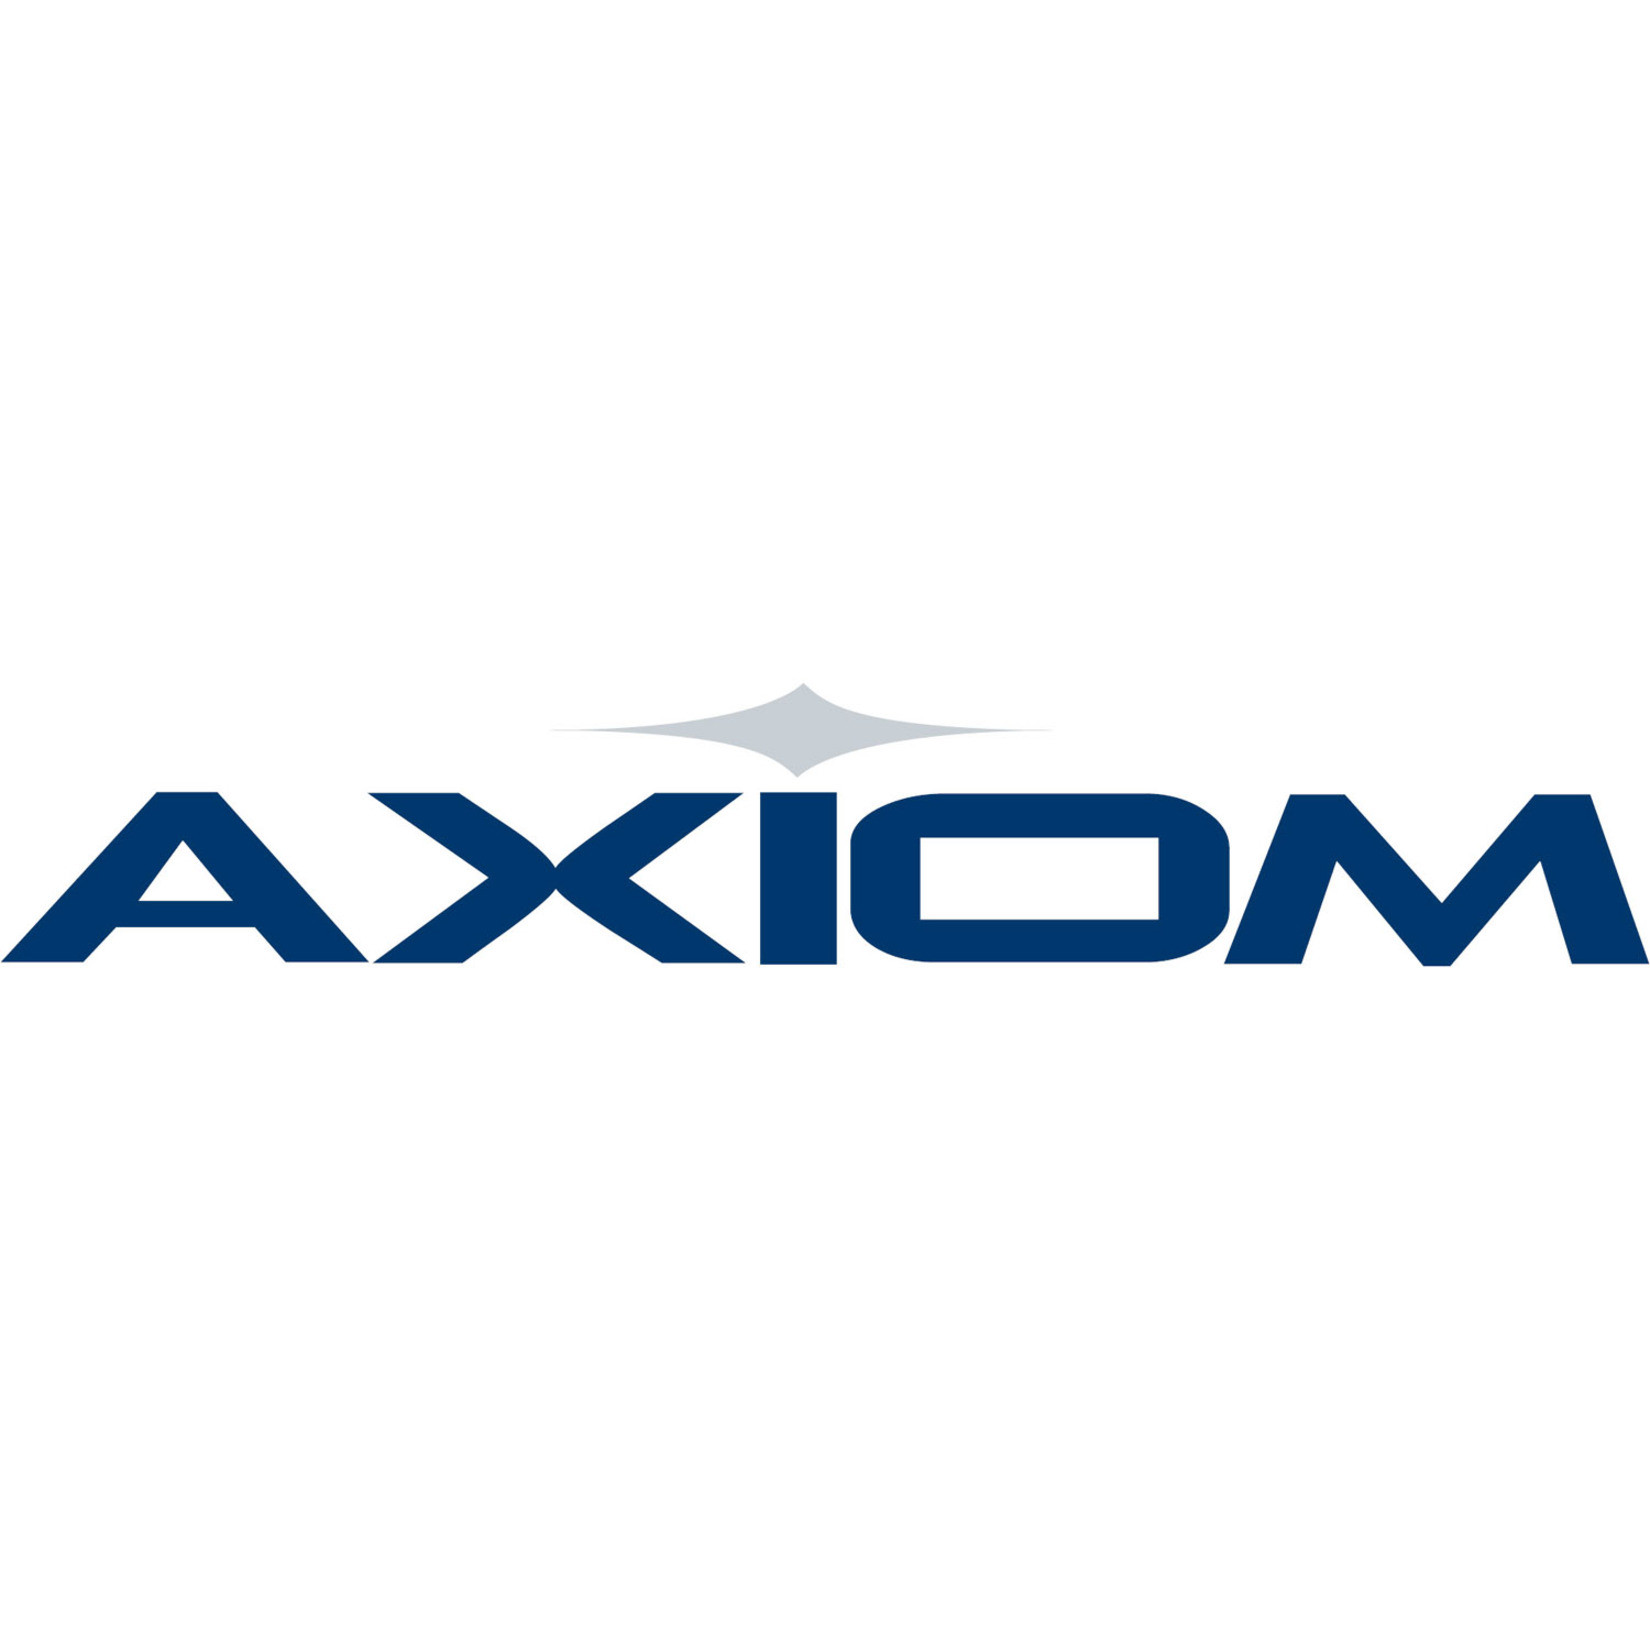 Axiom Fiber Optic Network Cable3.28 ft Fiber Optic Network Cable for Network Device, Router, SwitchFirst End: 1 x QSFP-DD NetworkSeco… AXG102635